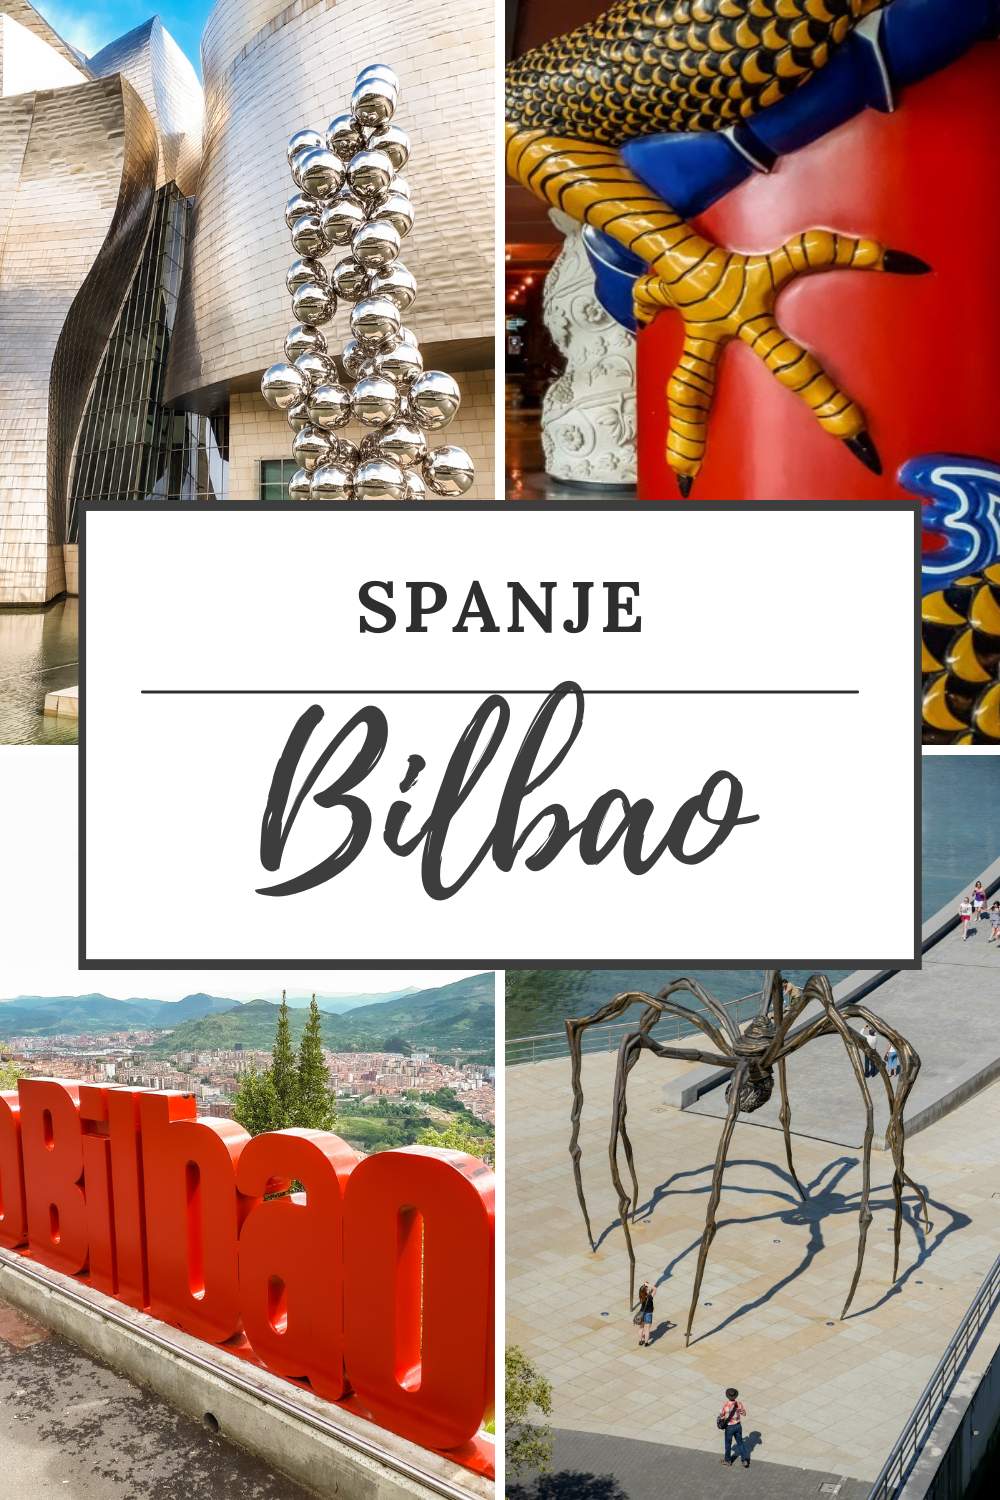 Stedentrip Bilbao: de leukste tips voor een stedentrip Bilbao | Mooistestedentrips.nl